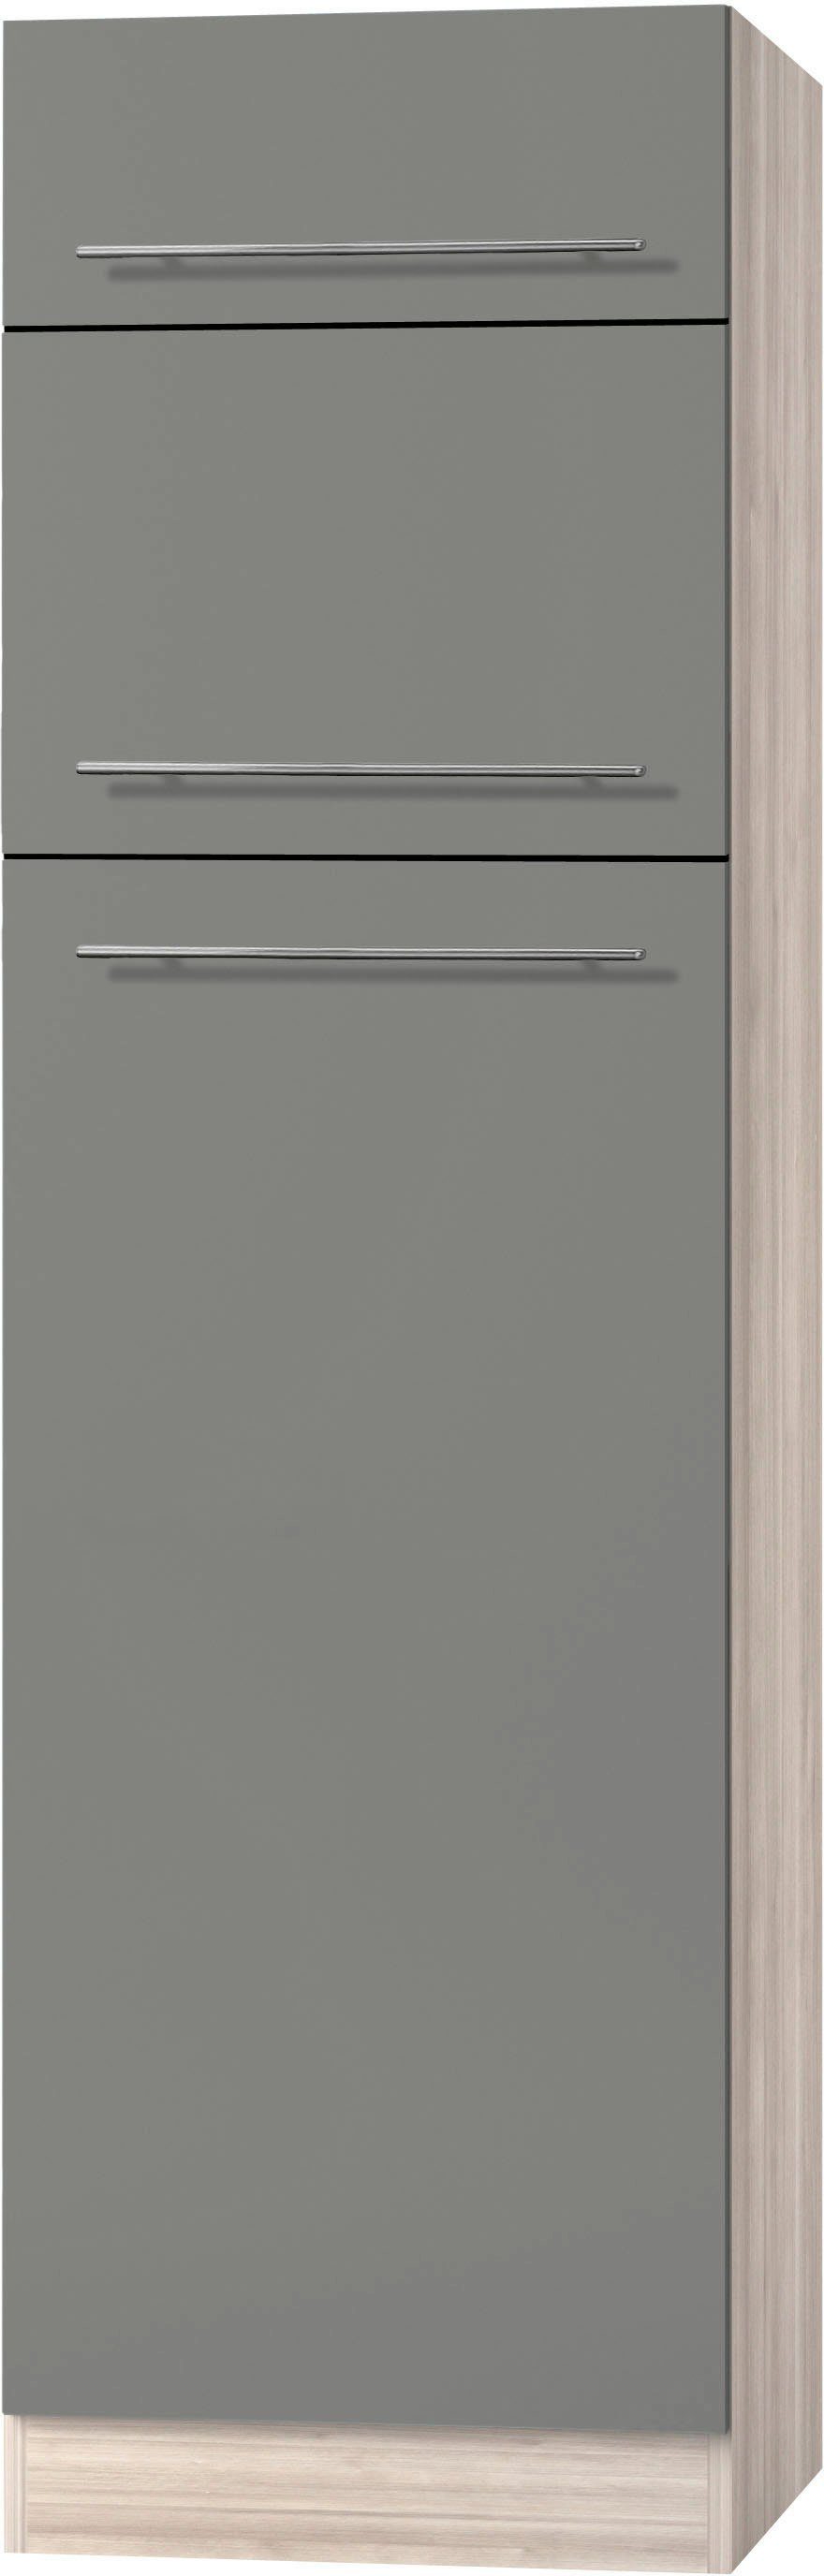 OPTIFIT Kühlumbauschrank Bern 60 cm breit, 212 cm hoch, mit  höhenverstellbaren Stellfüßen, Höhenverstellbare Stellfüße für  Bodenausgleich | Sockelblenden